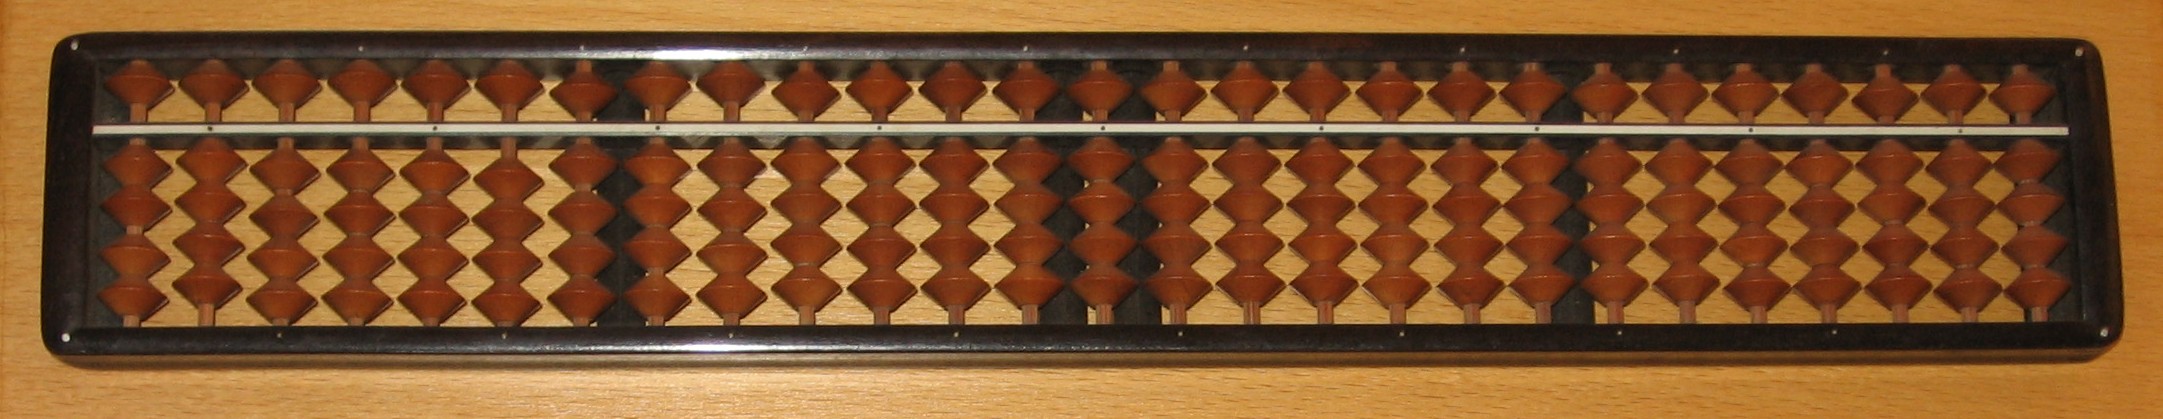 Japanse abacus